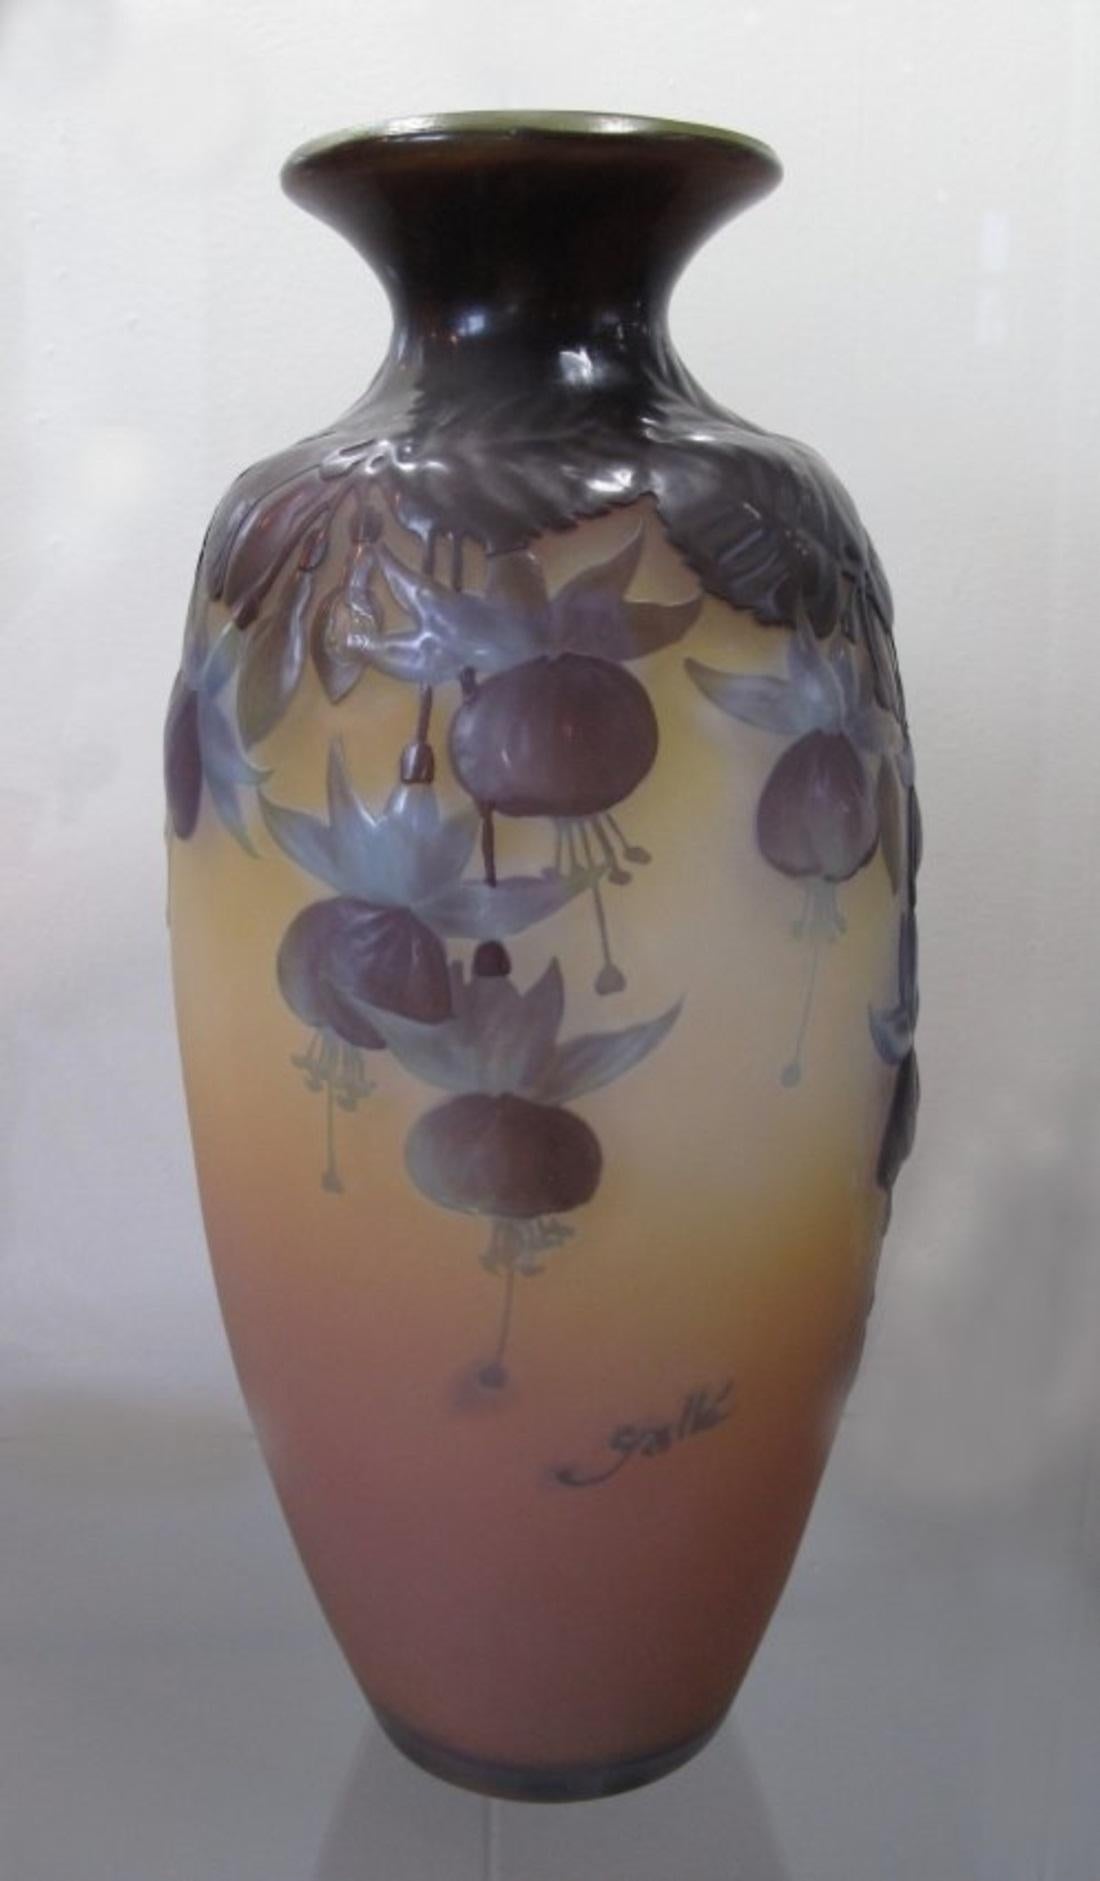 Émile Gallé (1846-1904)
A fine mould-blown (soufflé-moulé) Galle Cameo glass vase
